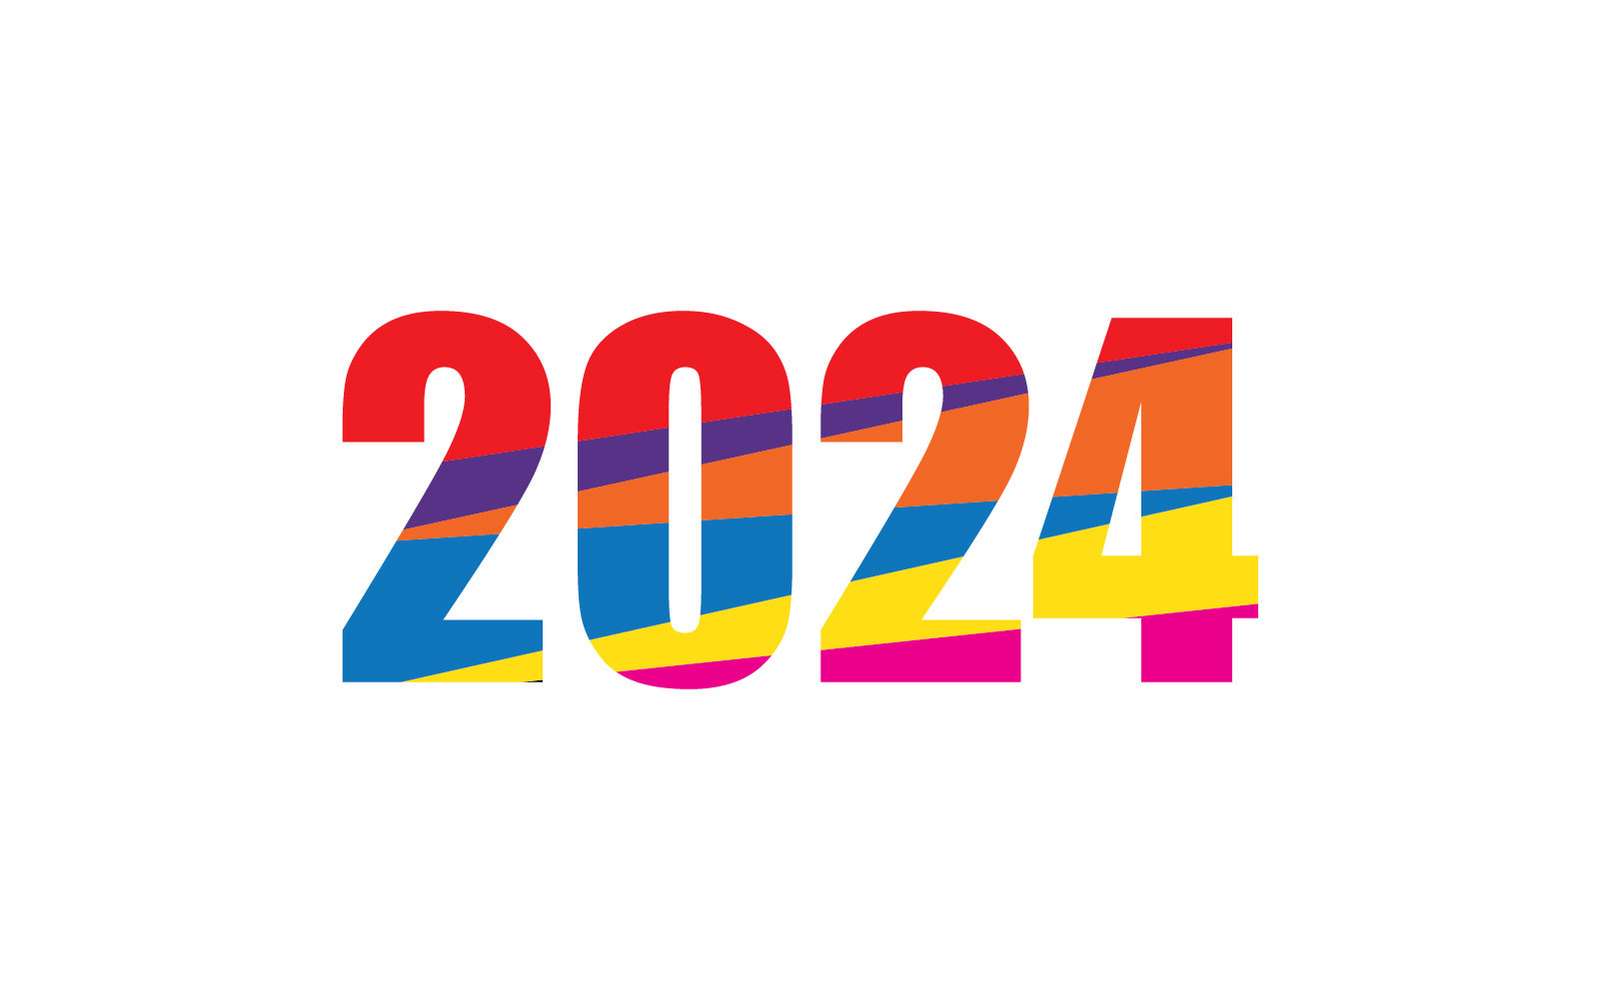 З новим роком 2024 логотип і символ Grafico por De пазл онлайн